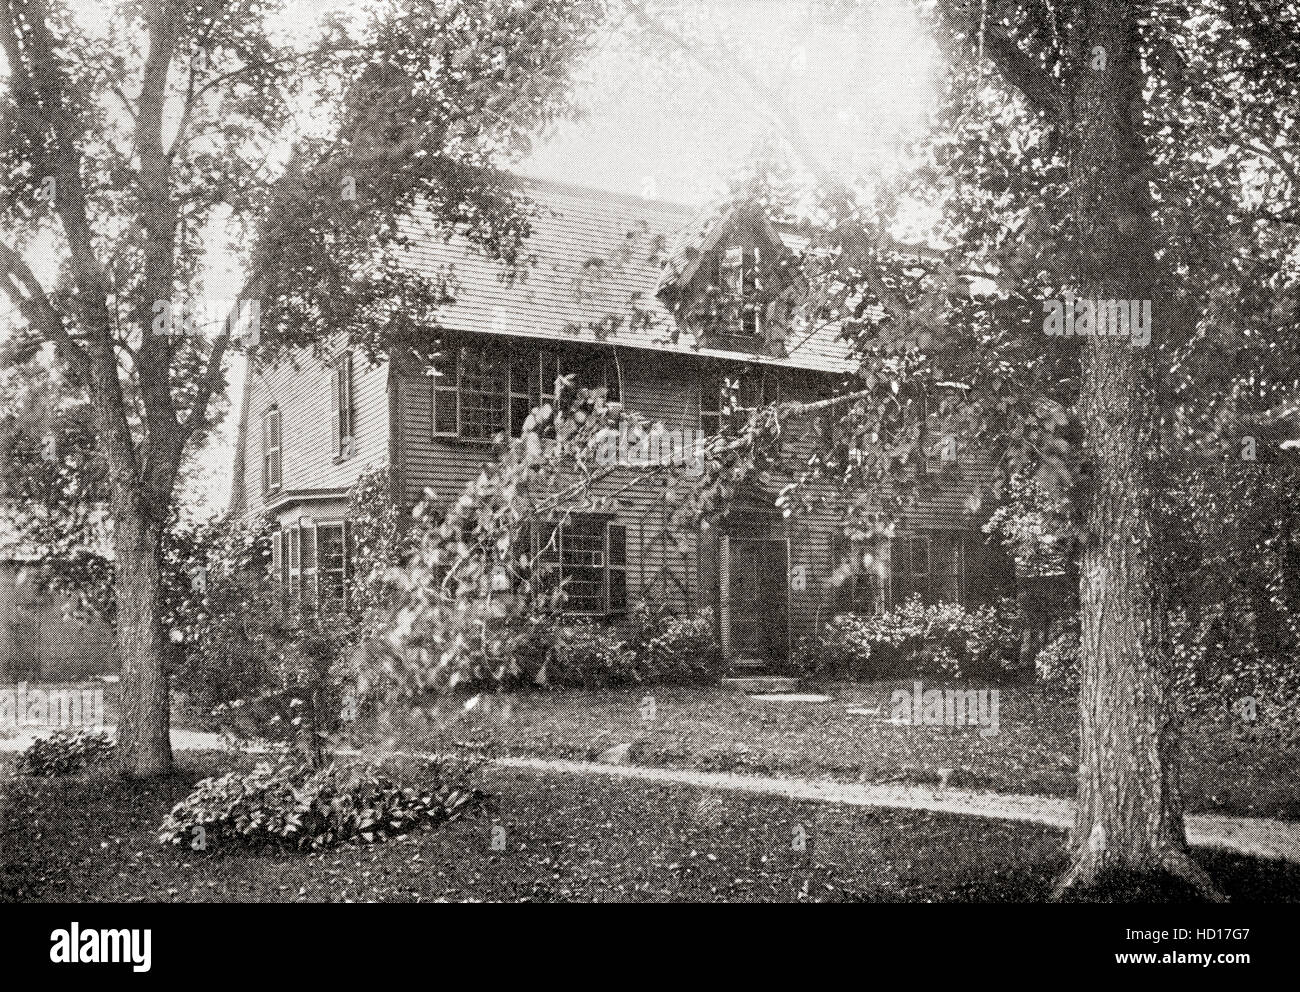 Die Old Manse, Concord, Massachusetts, Vereinigte Staaten von Amerika, Heimat von Nathaniel Hawthorne, Nathaniel Hathorne, 1804 – 1864 geboren.  US-amerikanischer Schriftsteller, dunkle Romantik und Kurzgeschichte. Stockfoto